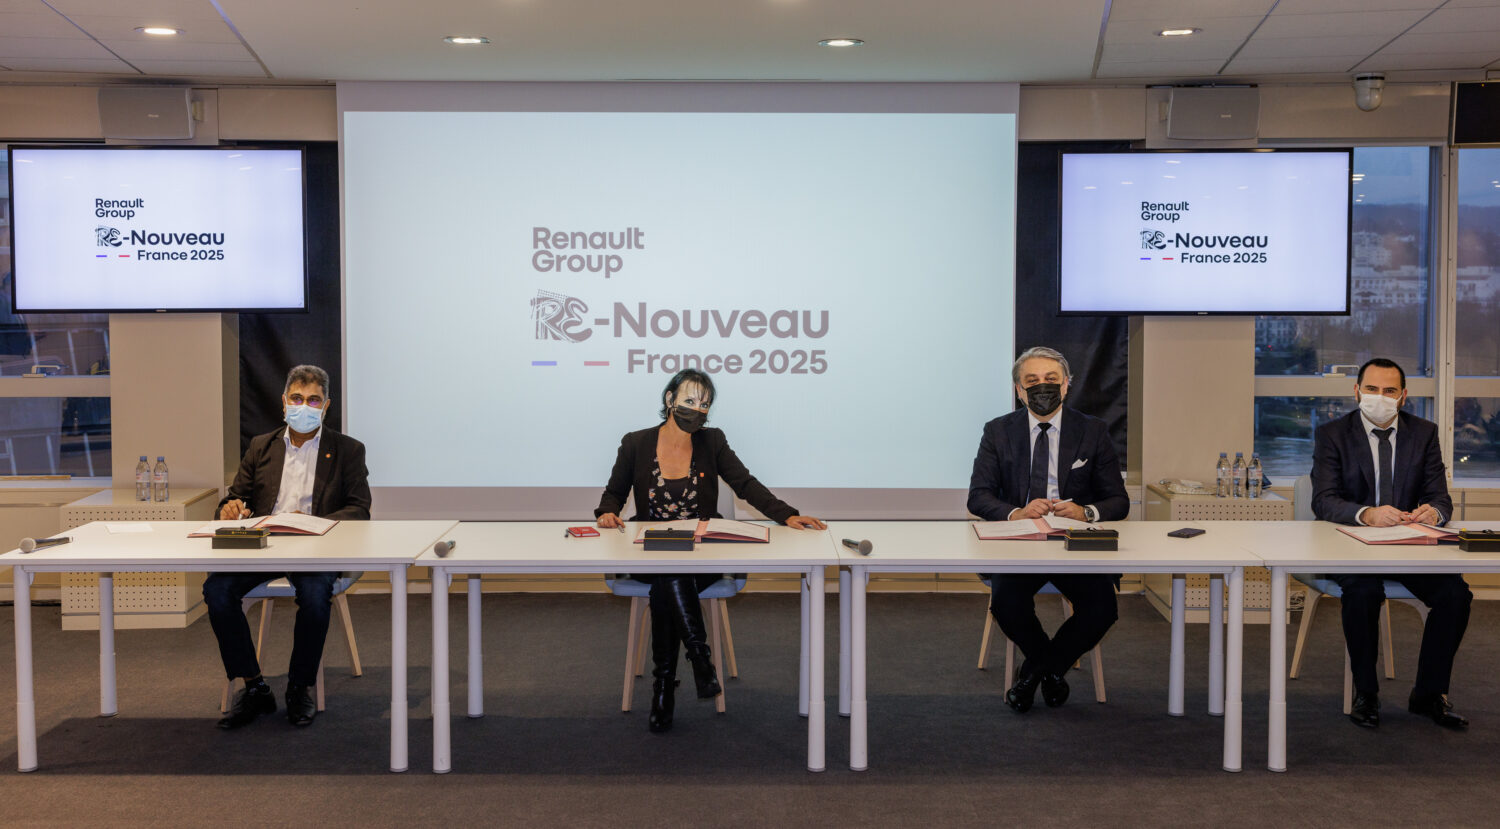 2021 - ‘Re-Nouveau France 2025’ agreement